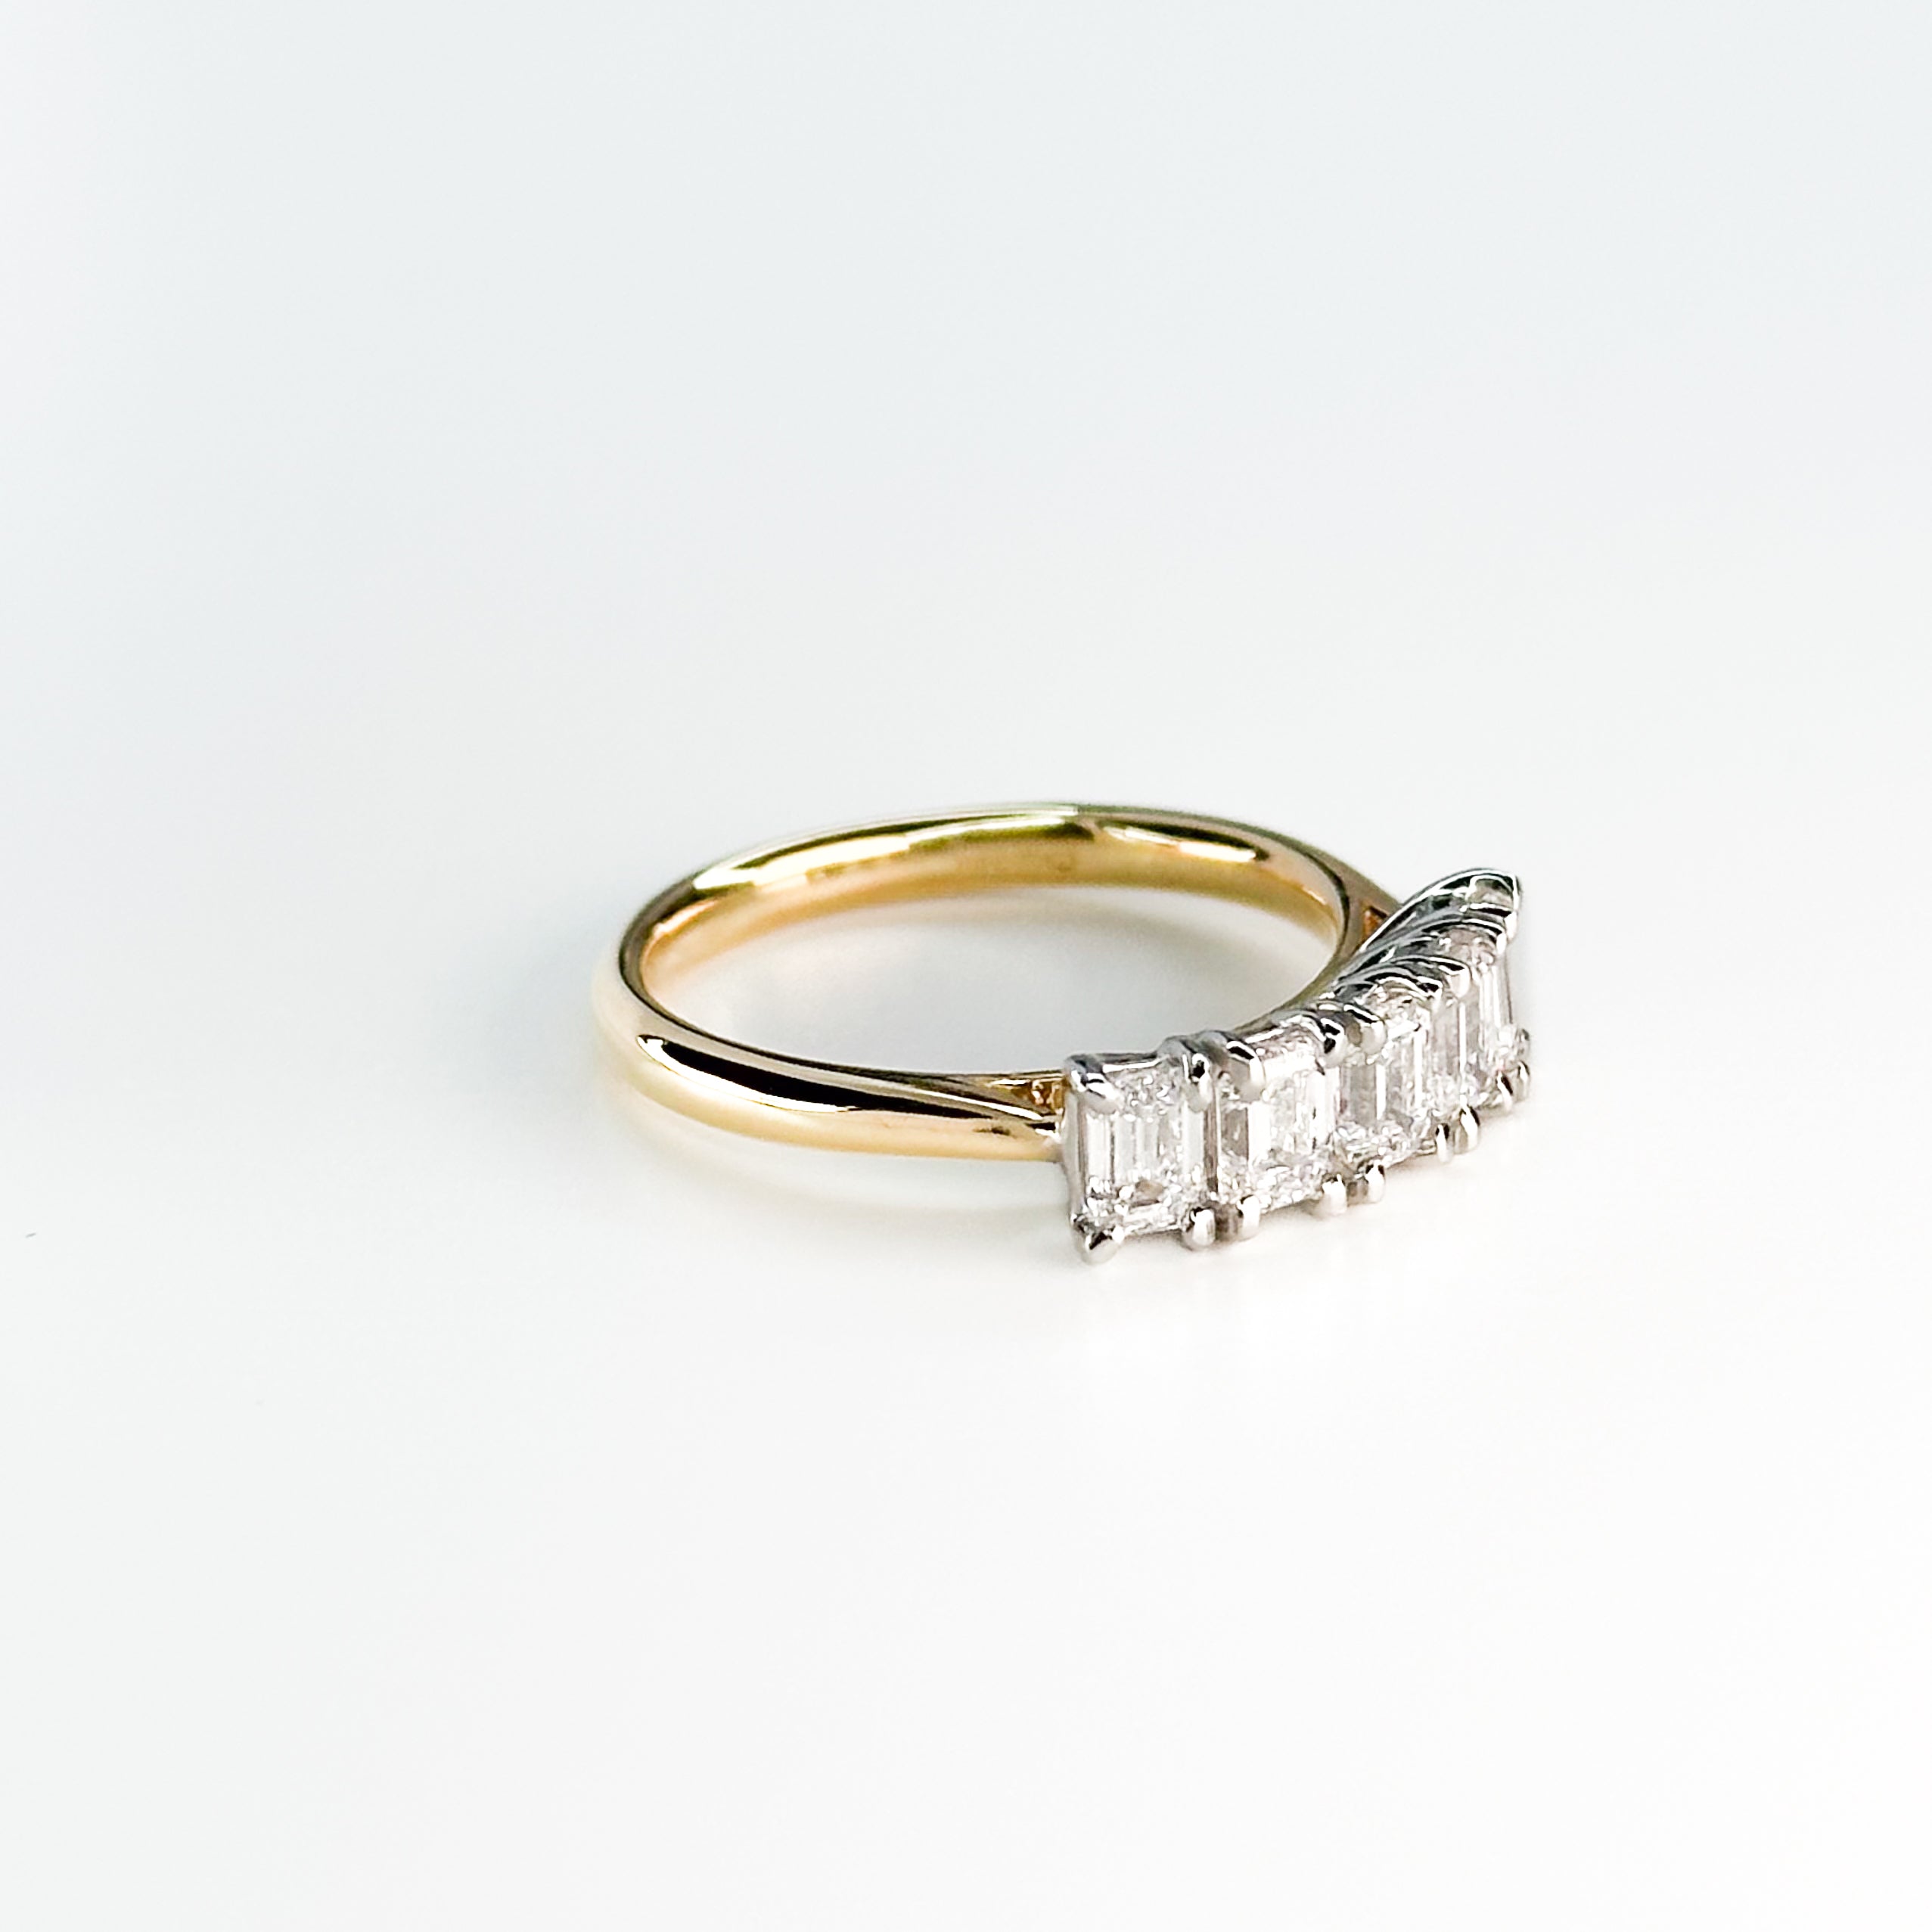 5 GIA Emerald Cut Diamond Ring